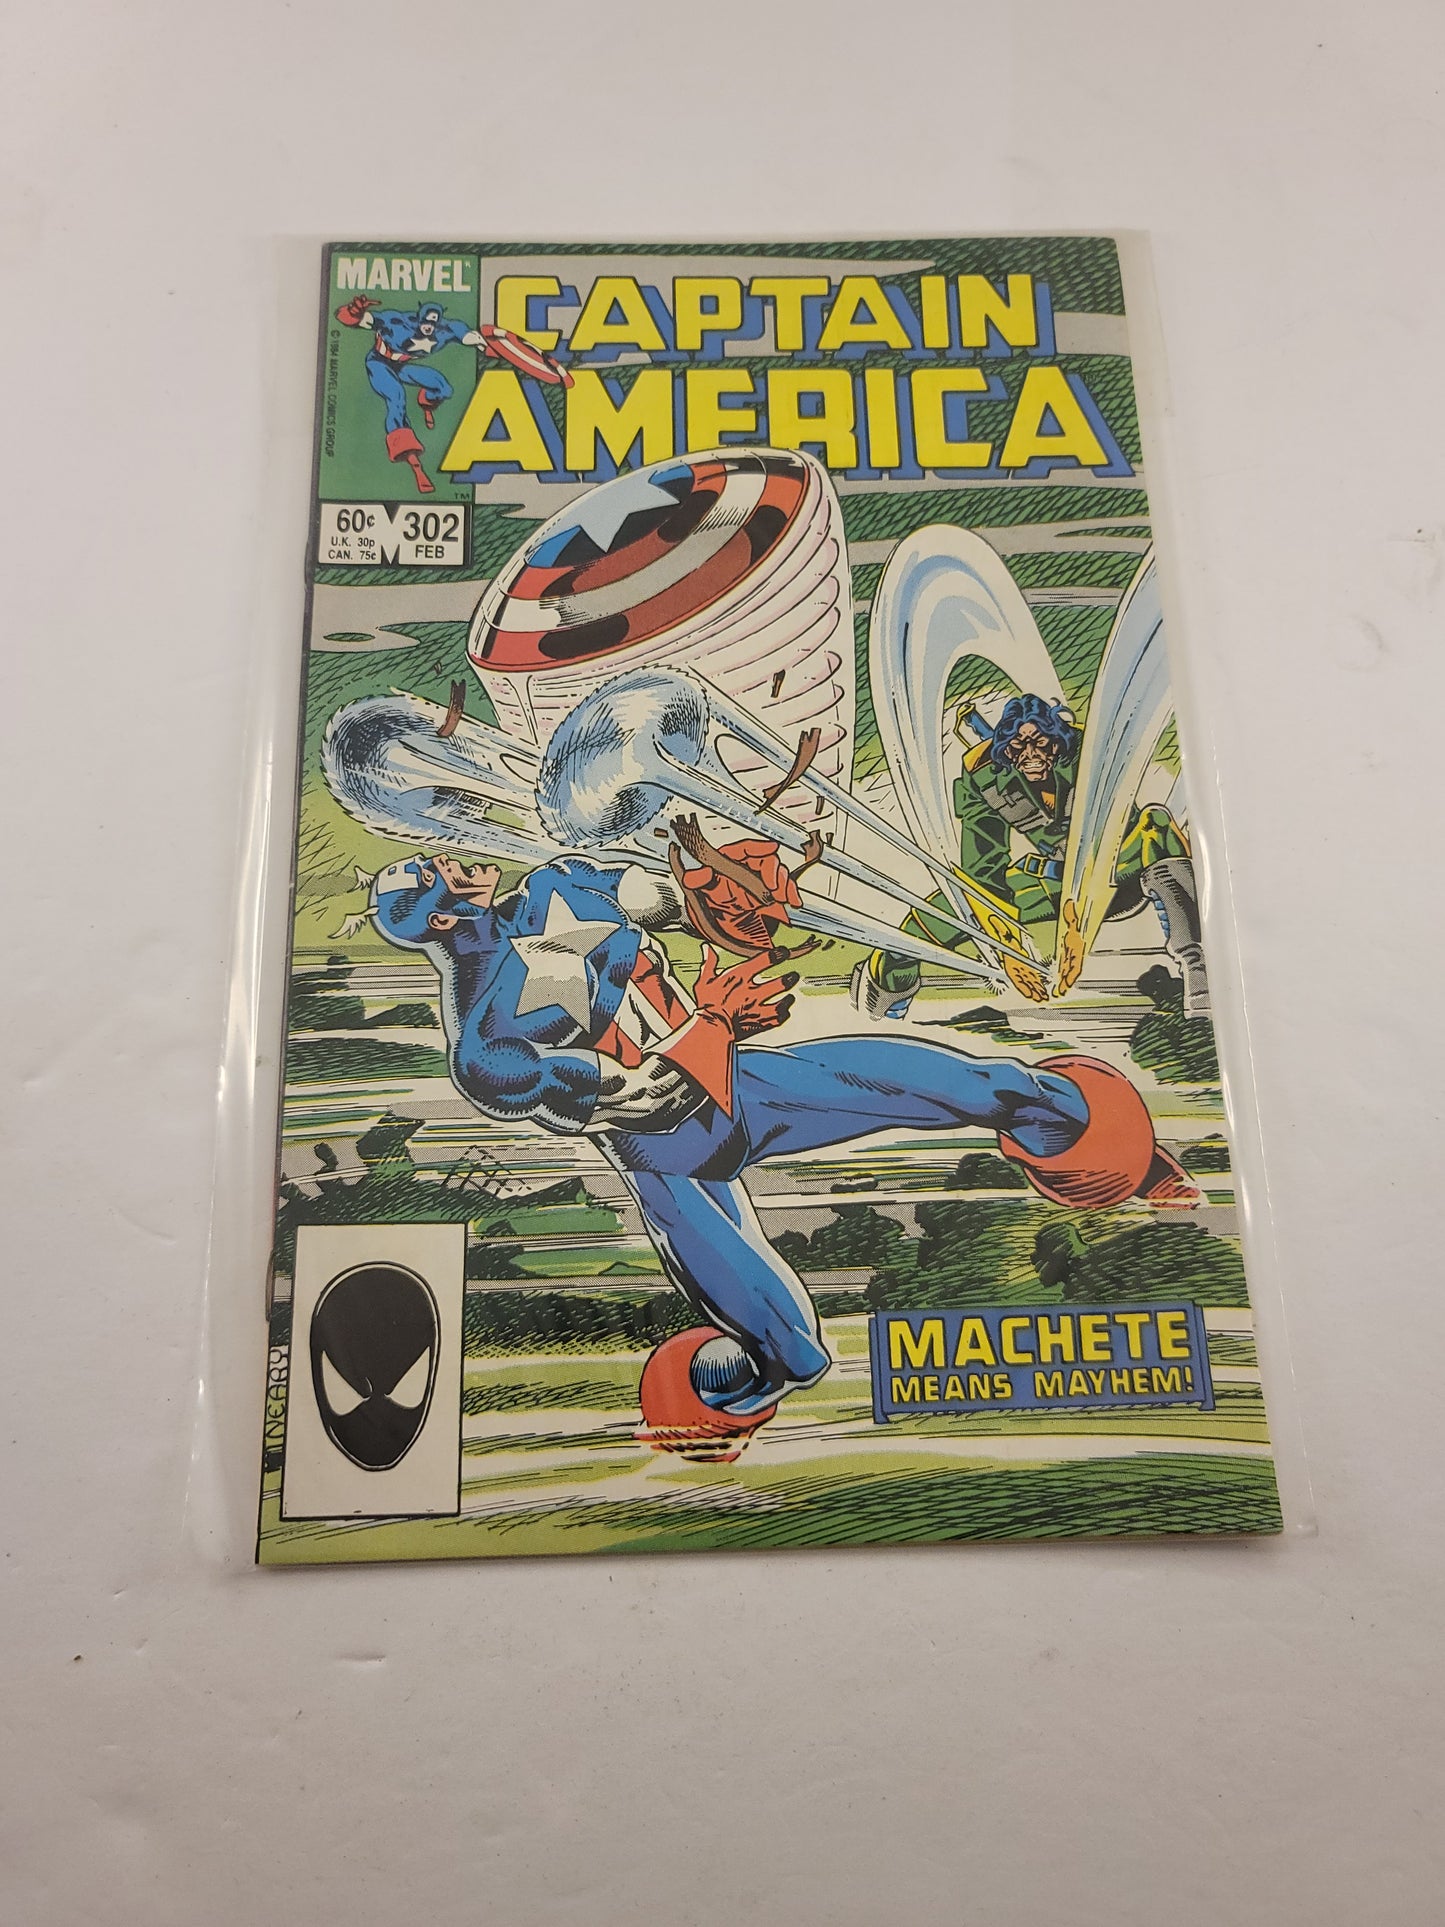 Captain America Volume 1 Issues 299 300 301 302 303 304